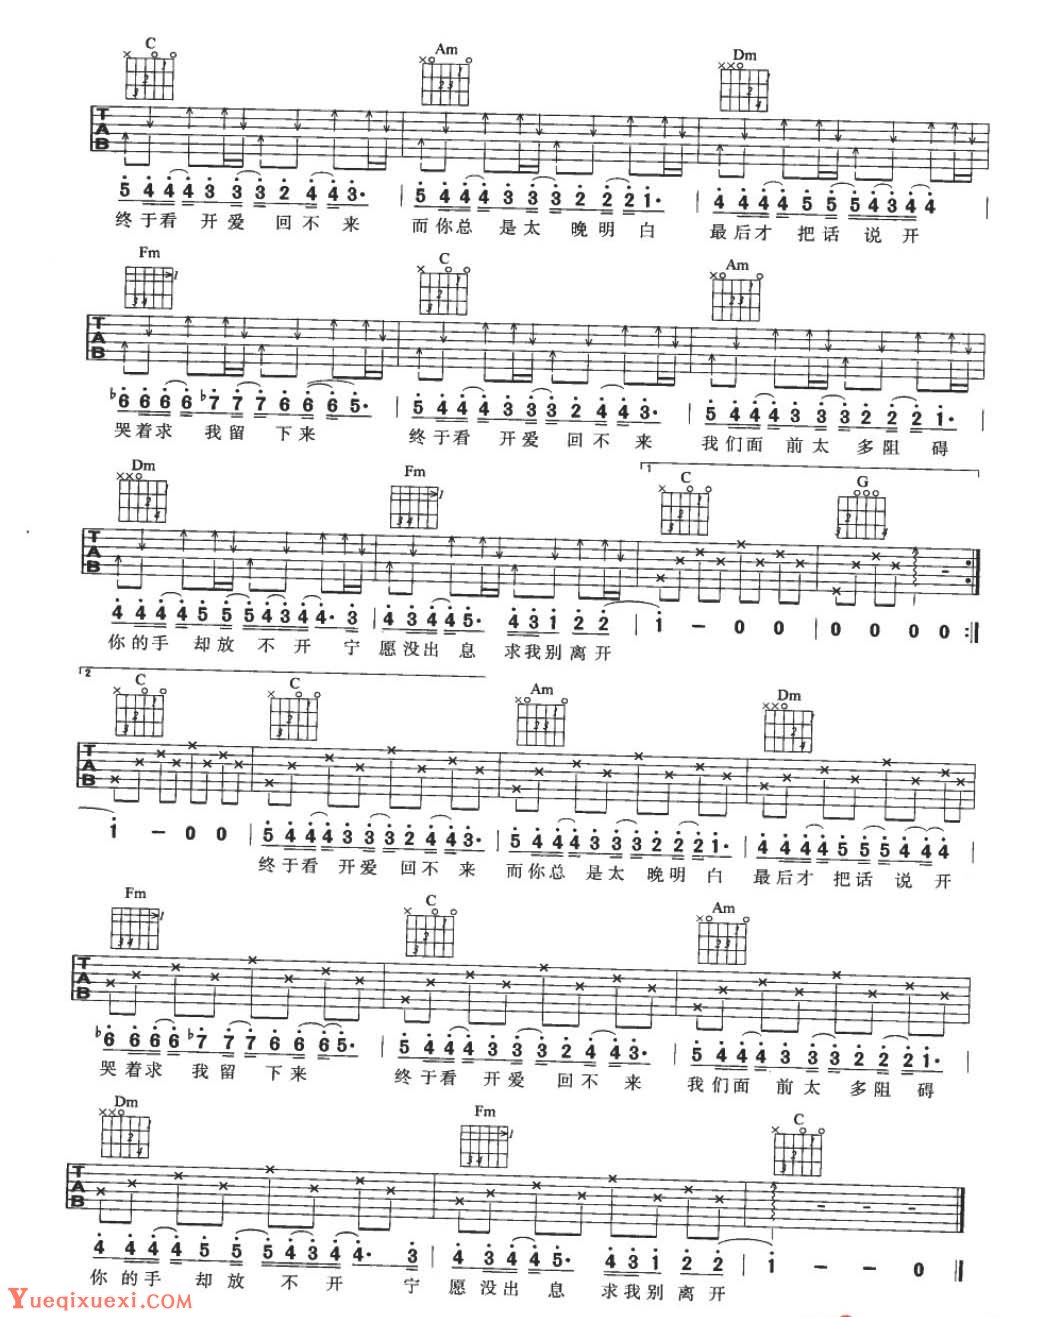 校园民谣吉他歌曲《灰姑娘》G大调/四四拍/分解和弦-民谣吉他谱 - 乐器学习网